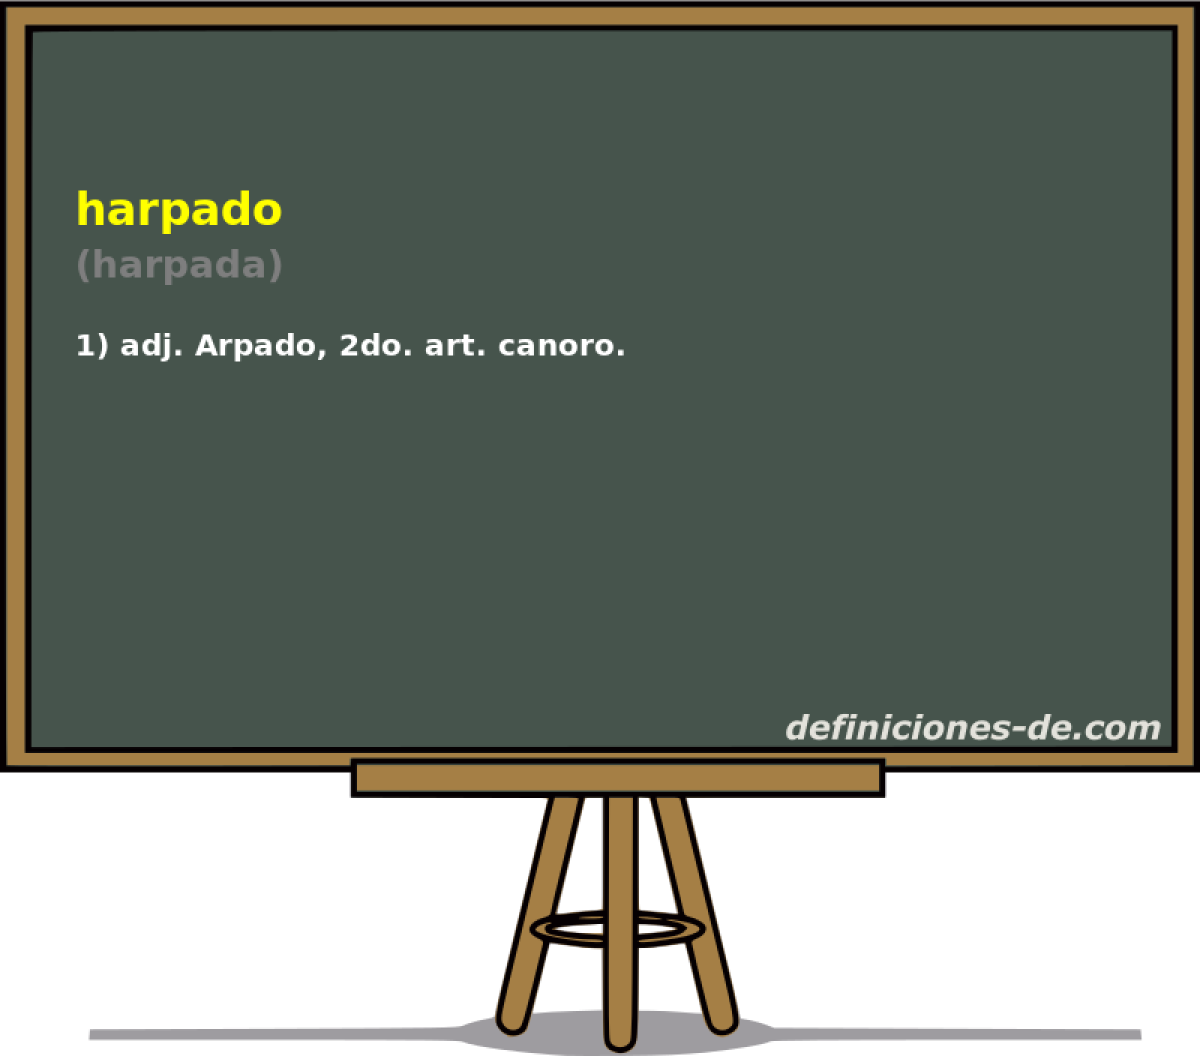 harpado (harpada)